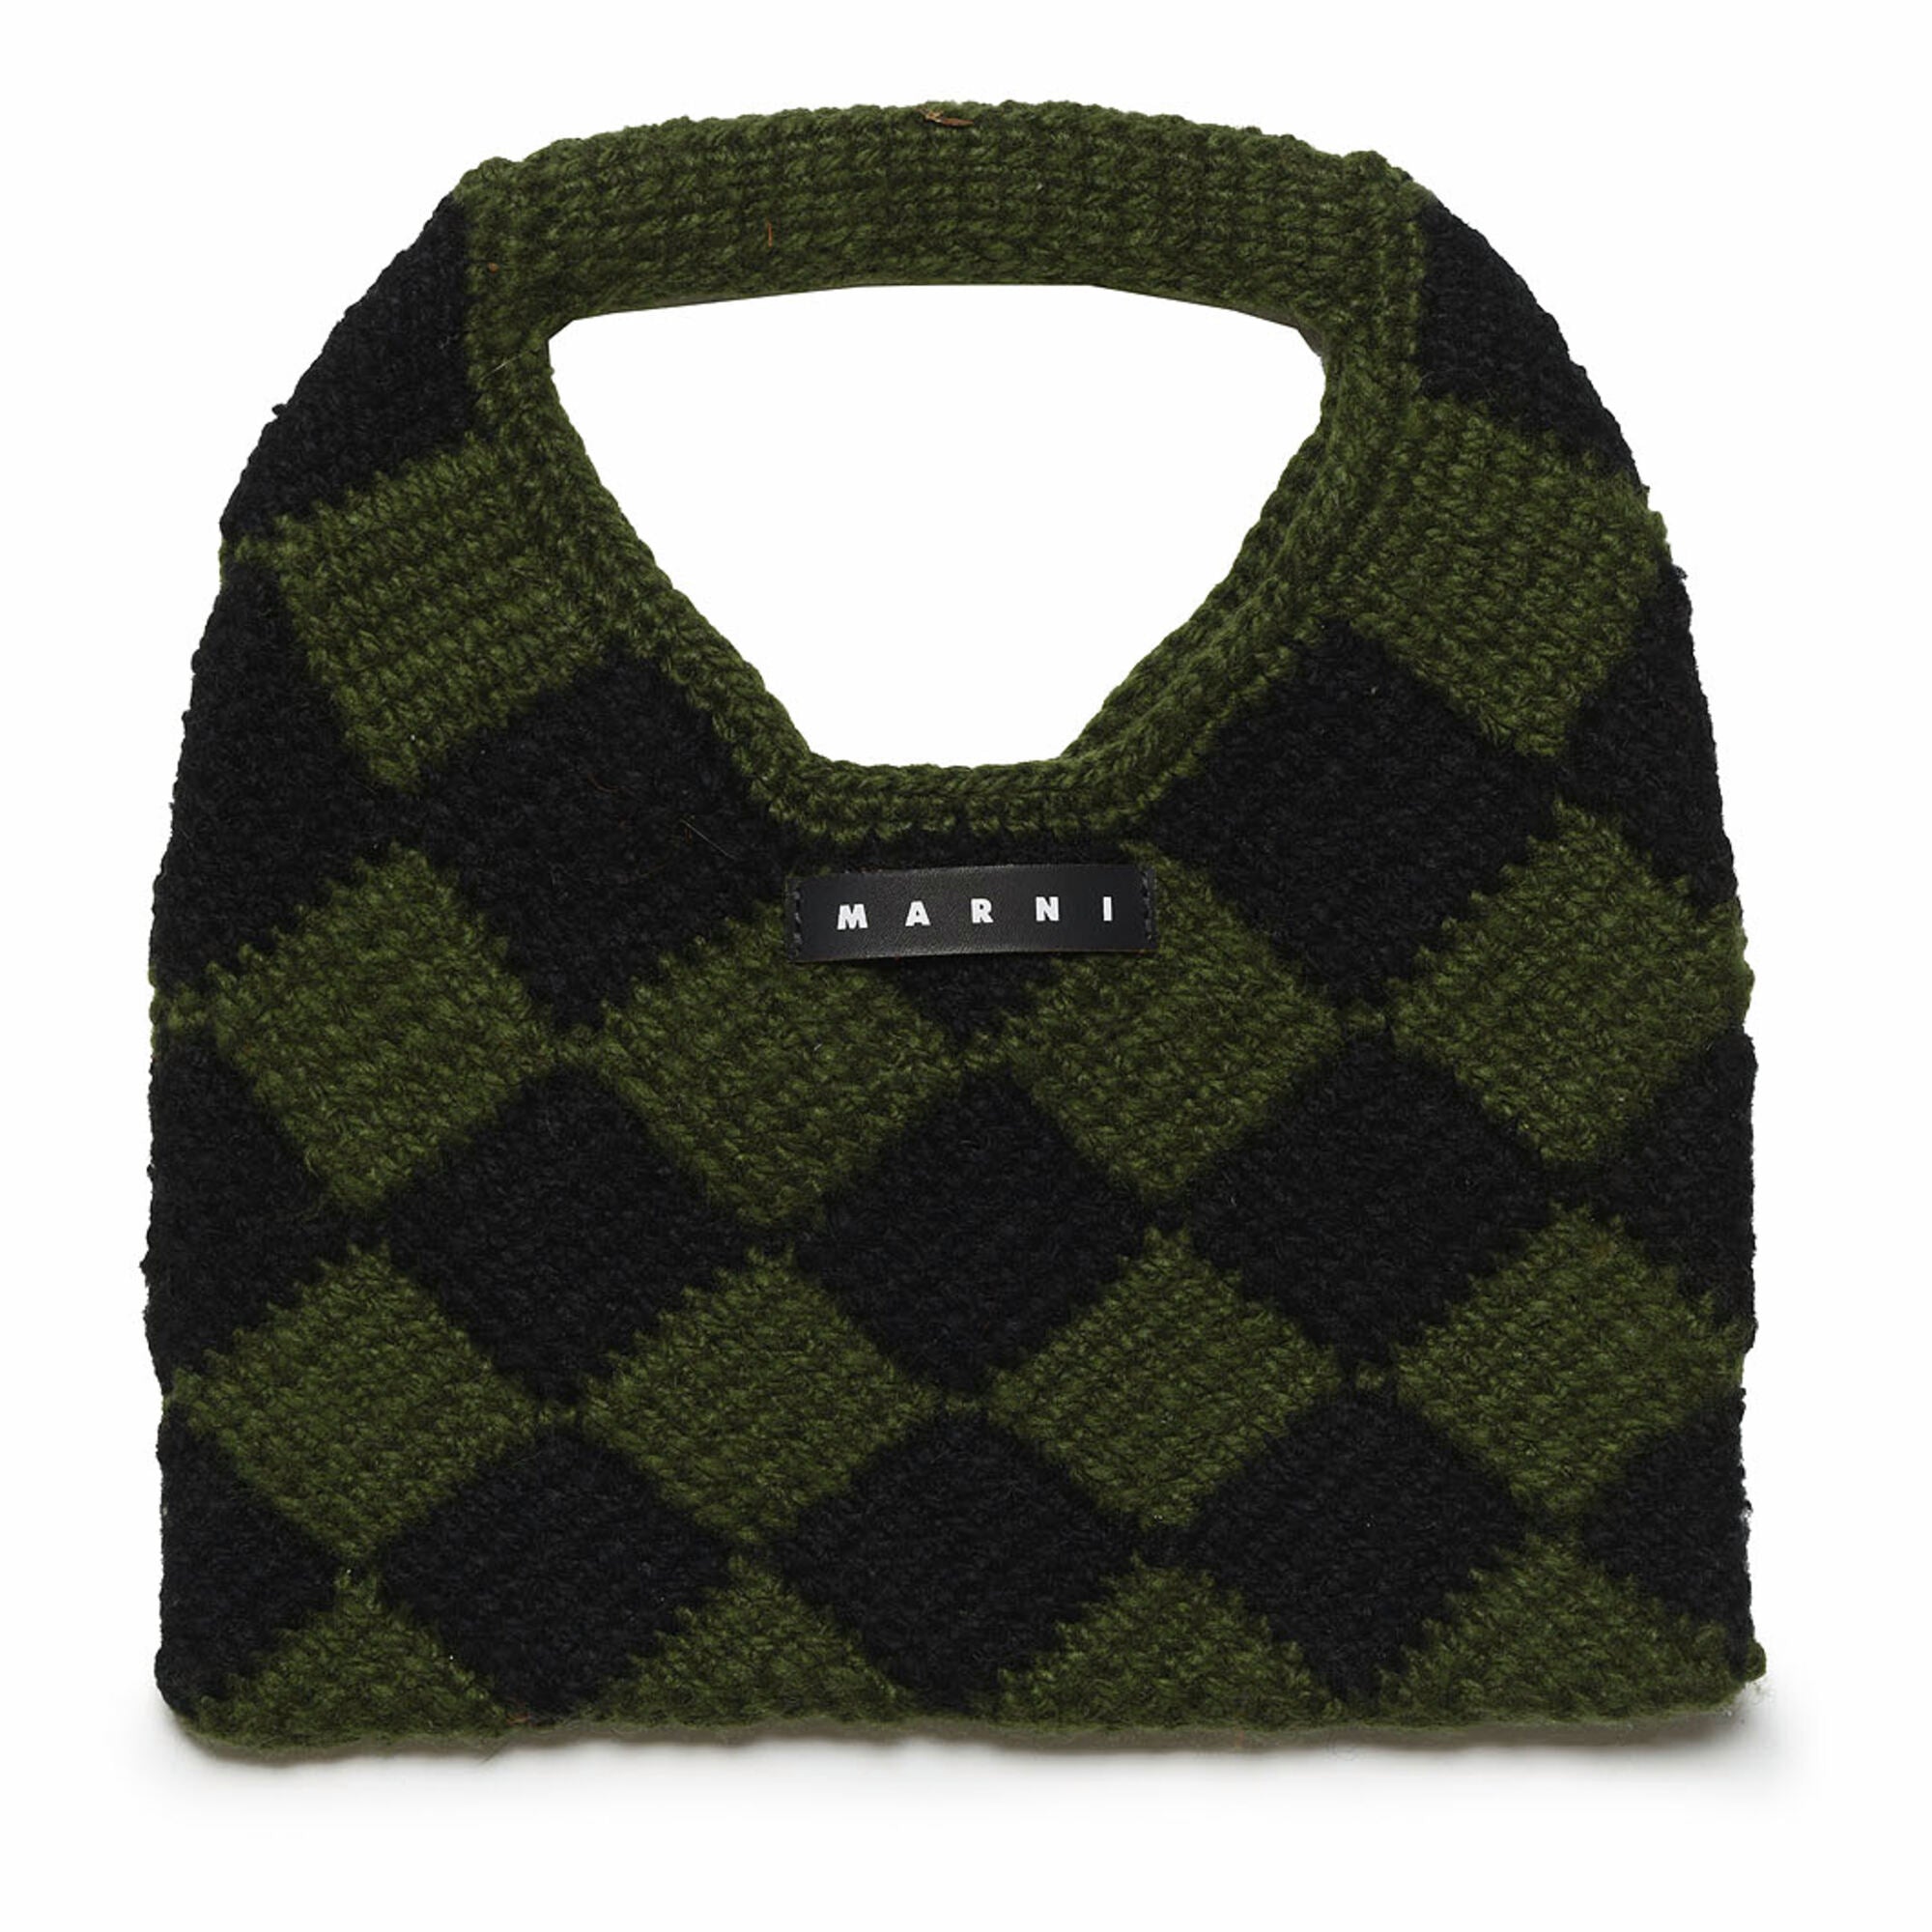 Girls Green Check Crochet Handbag